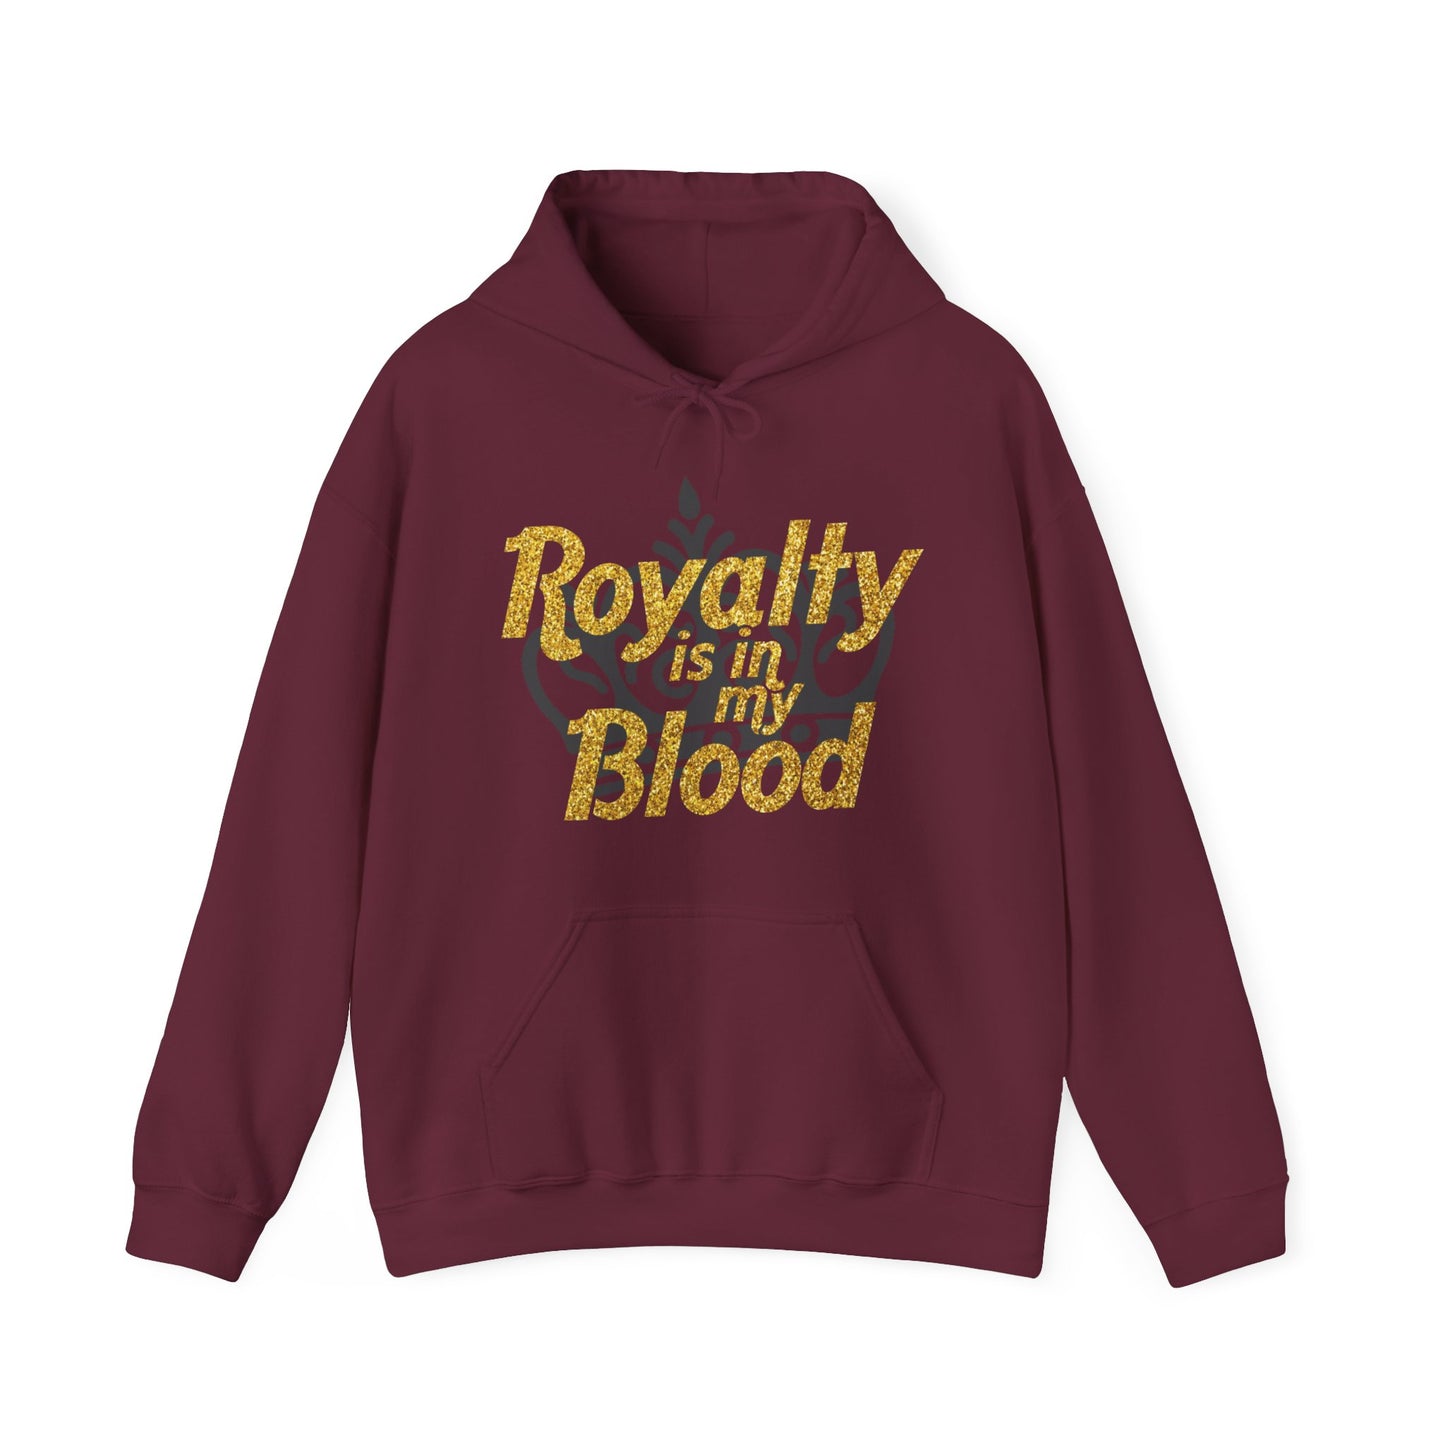 "Royalty is in my Blood" Hoodie